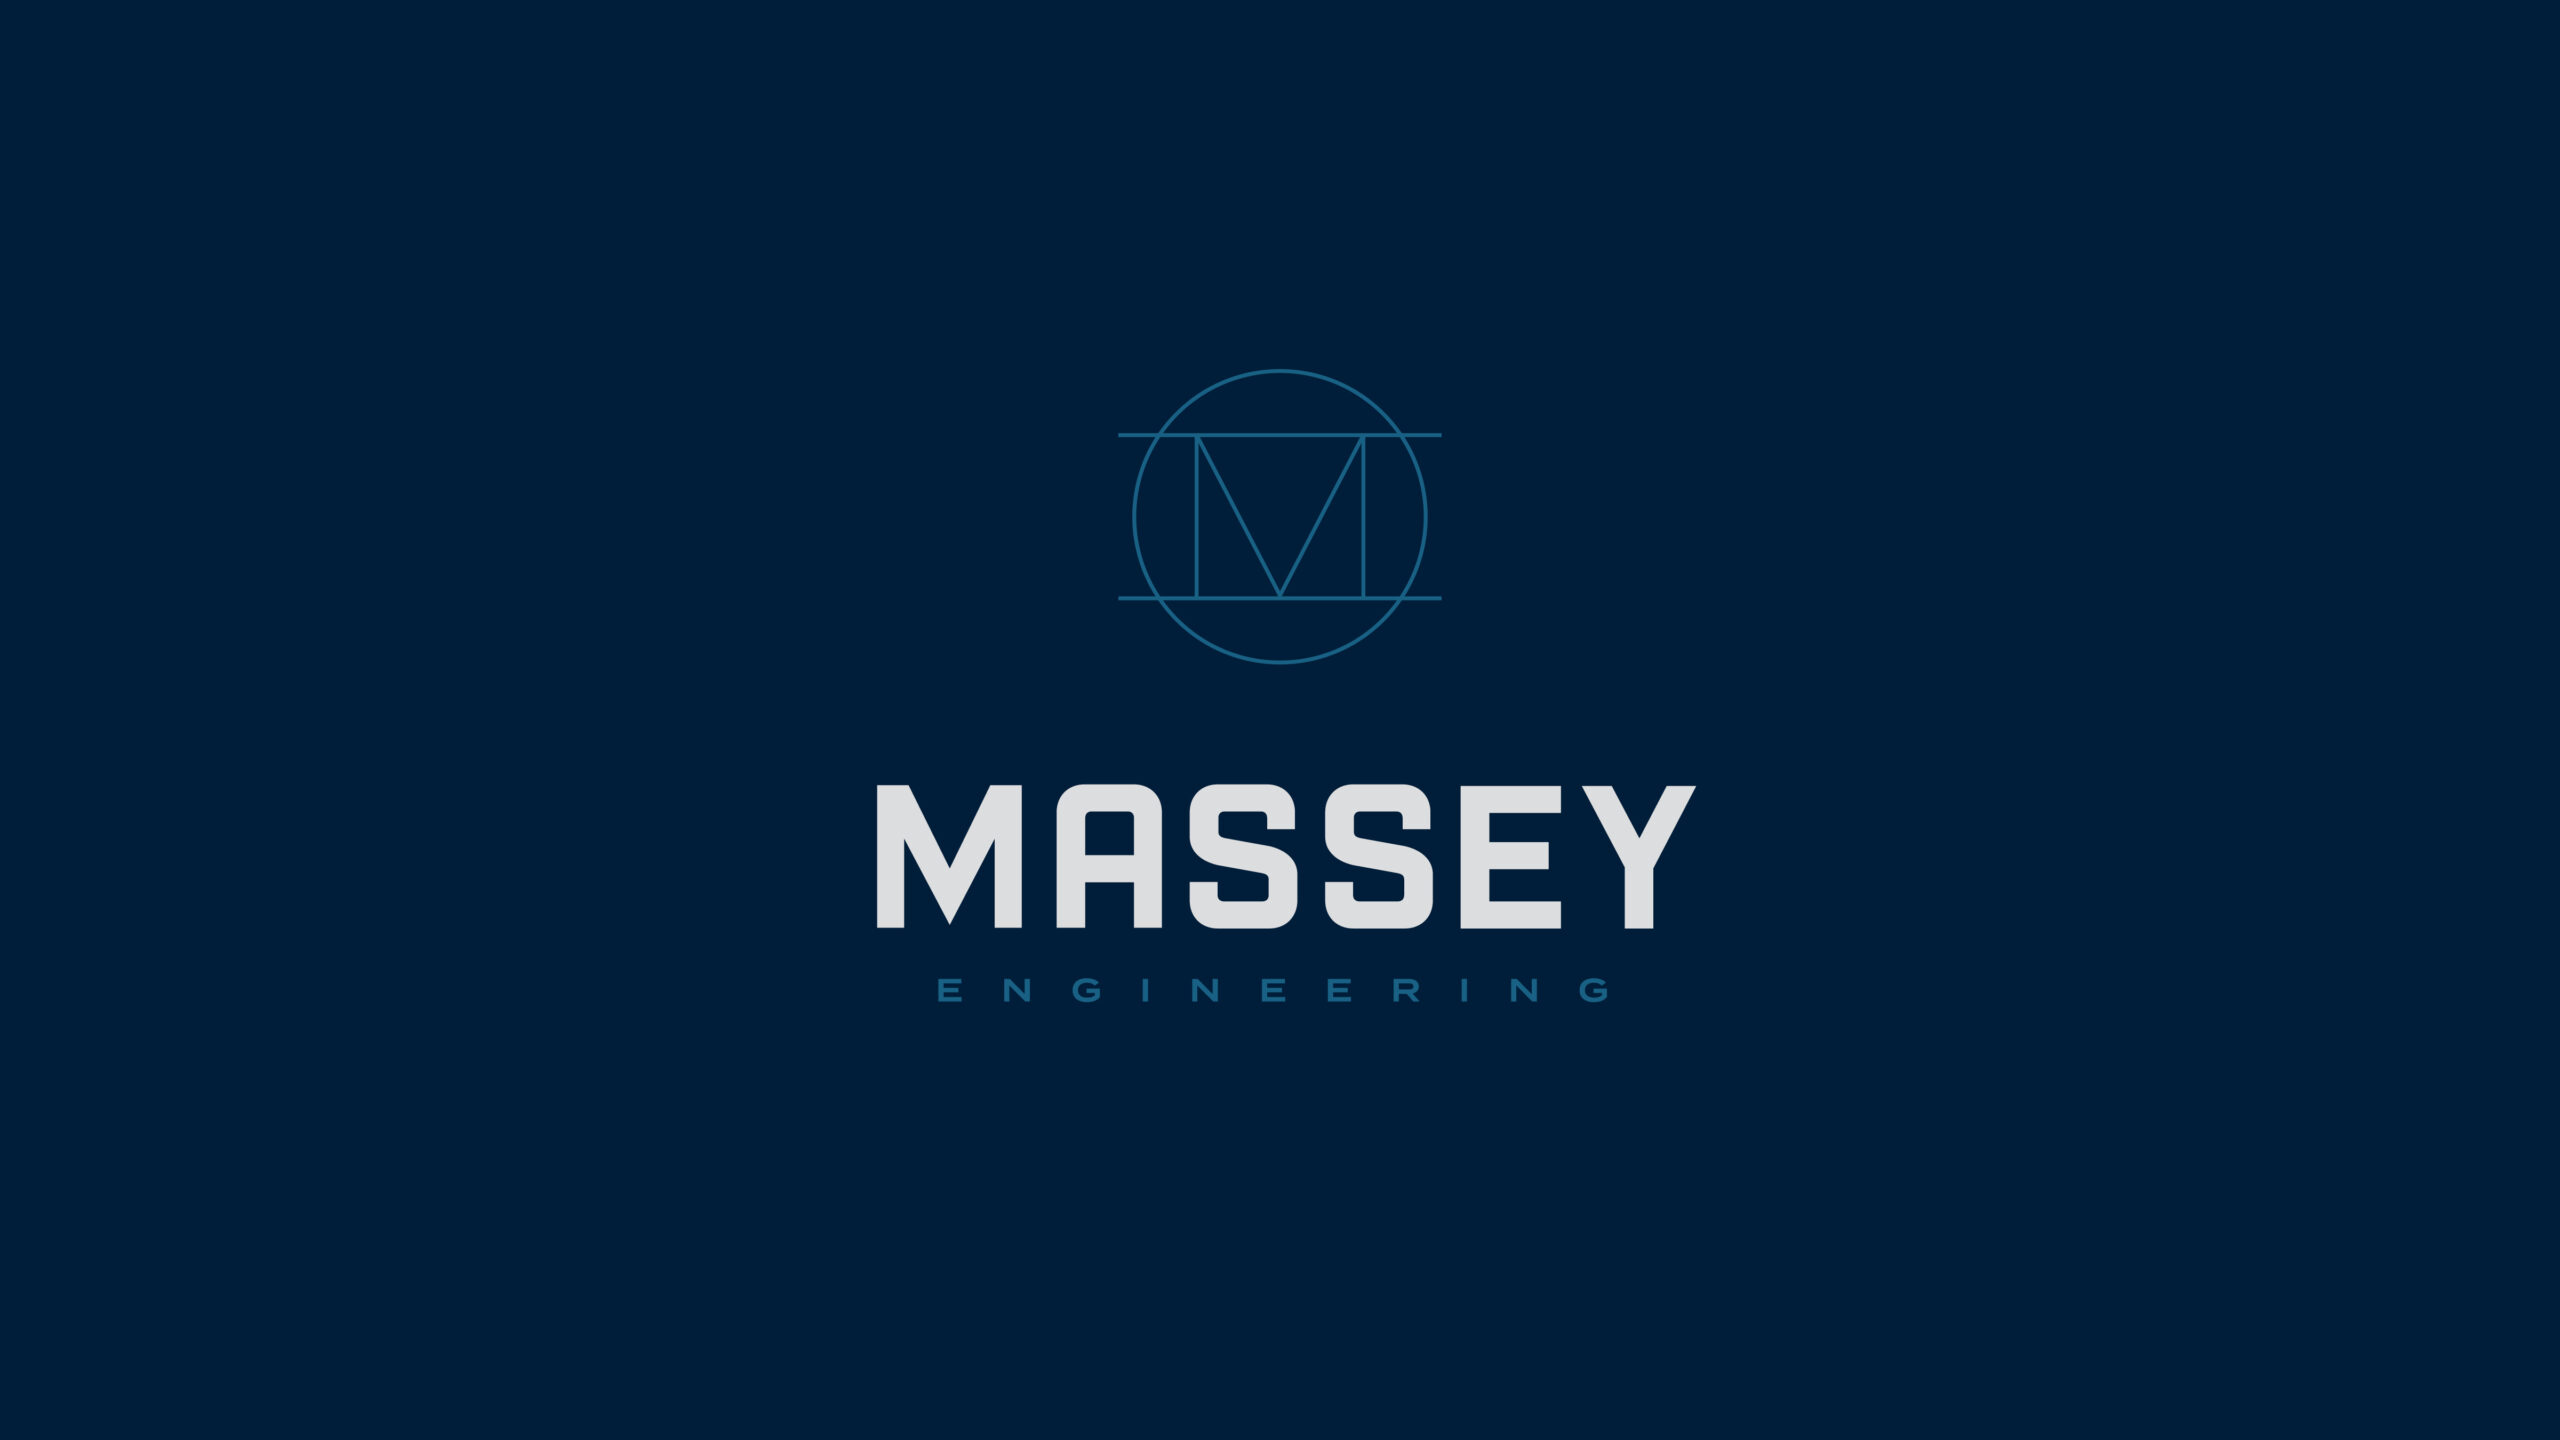 Massey Engineering